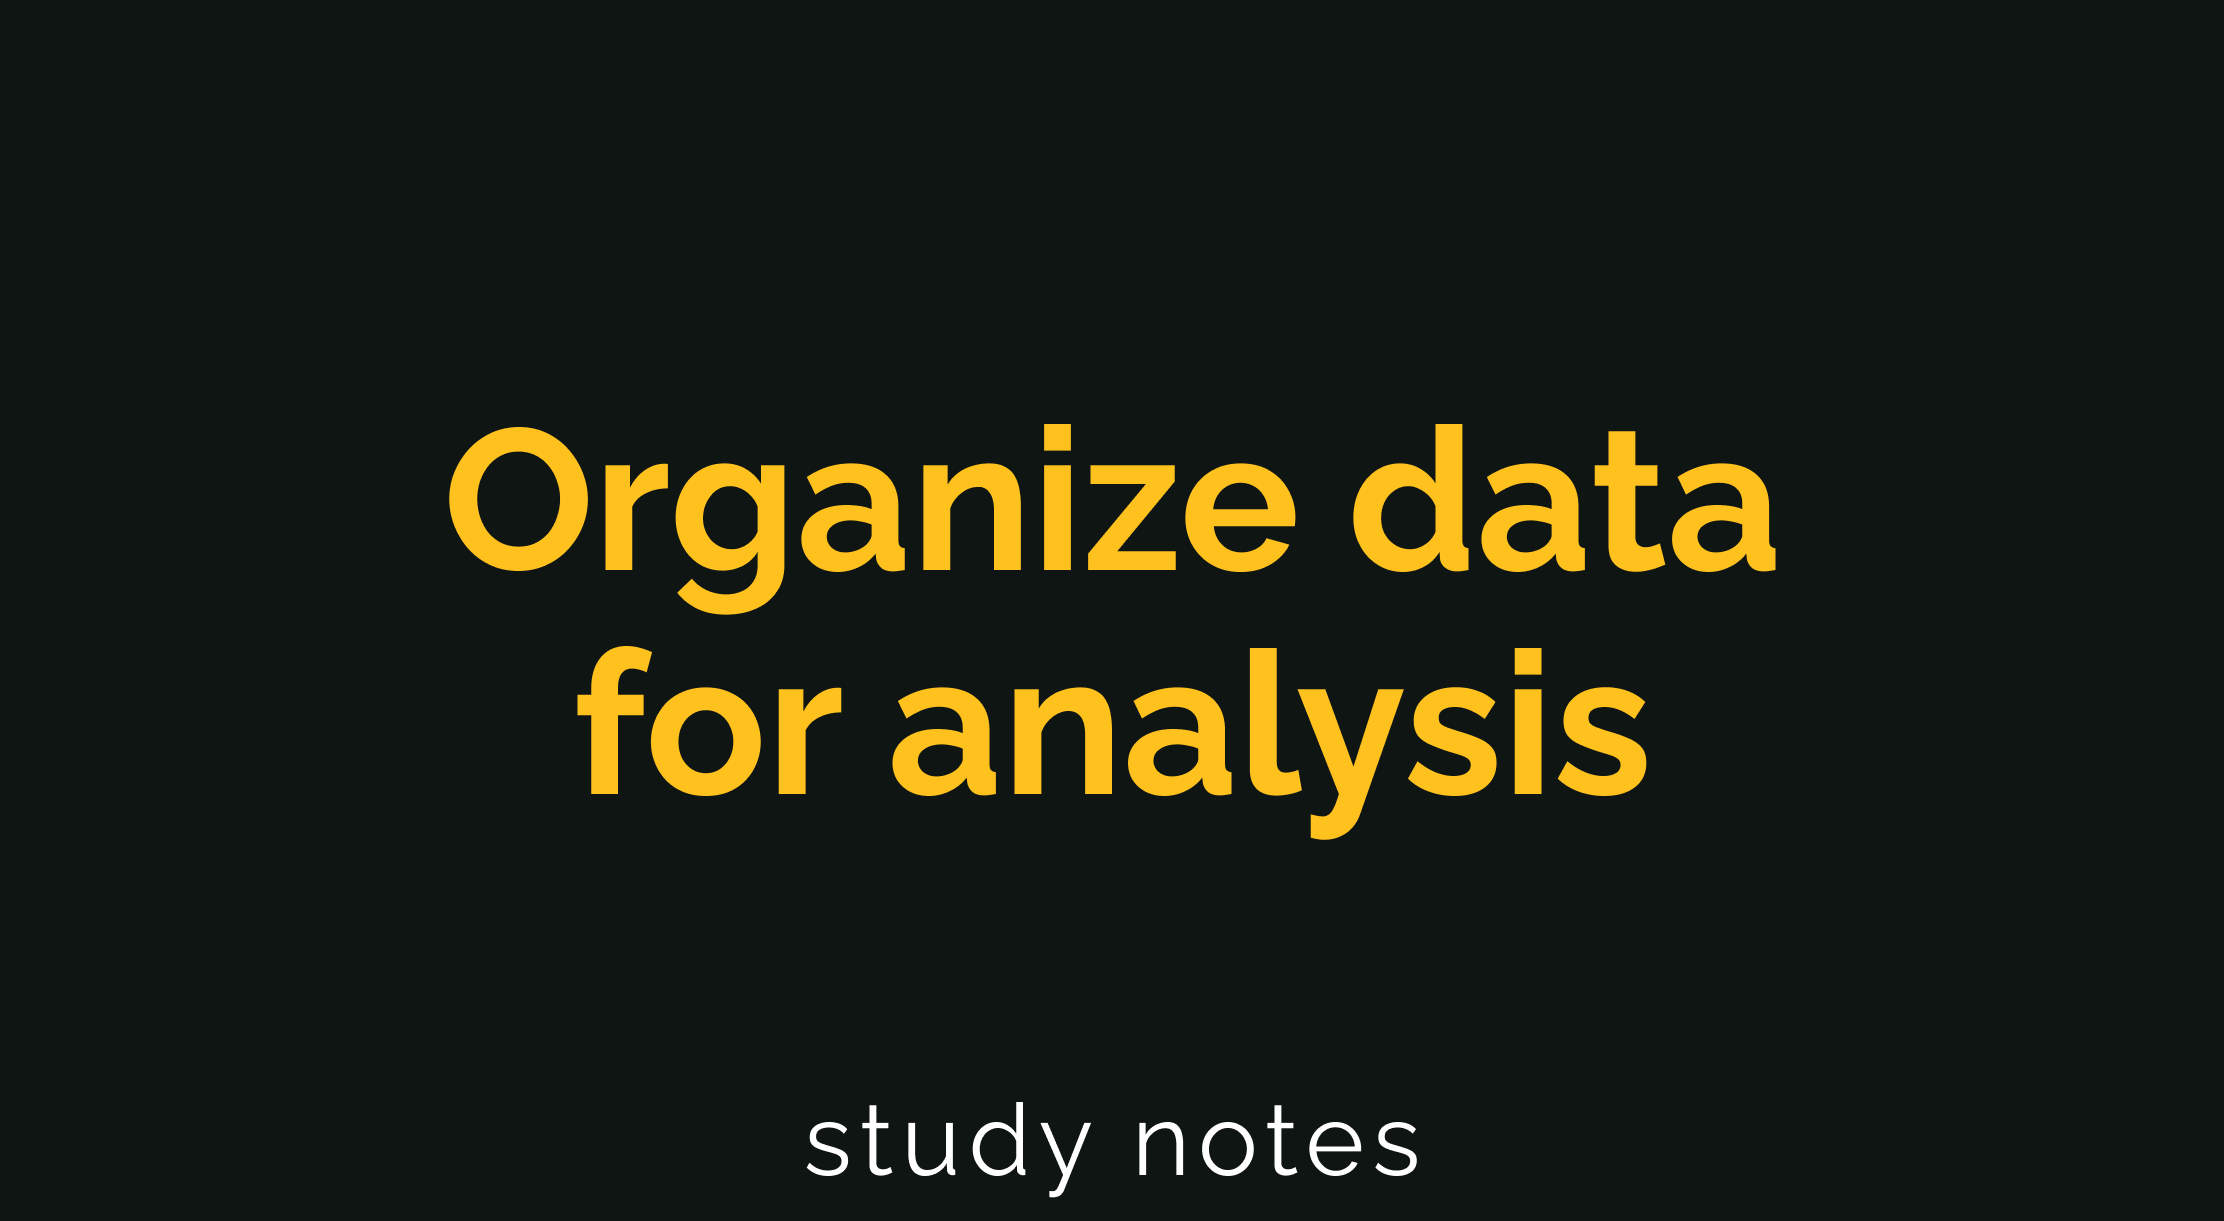 Organize data for analysis